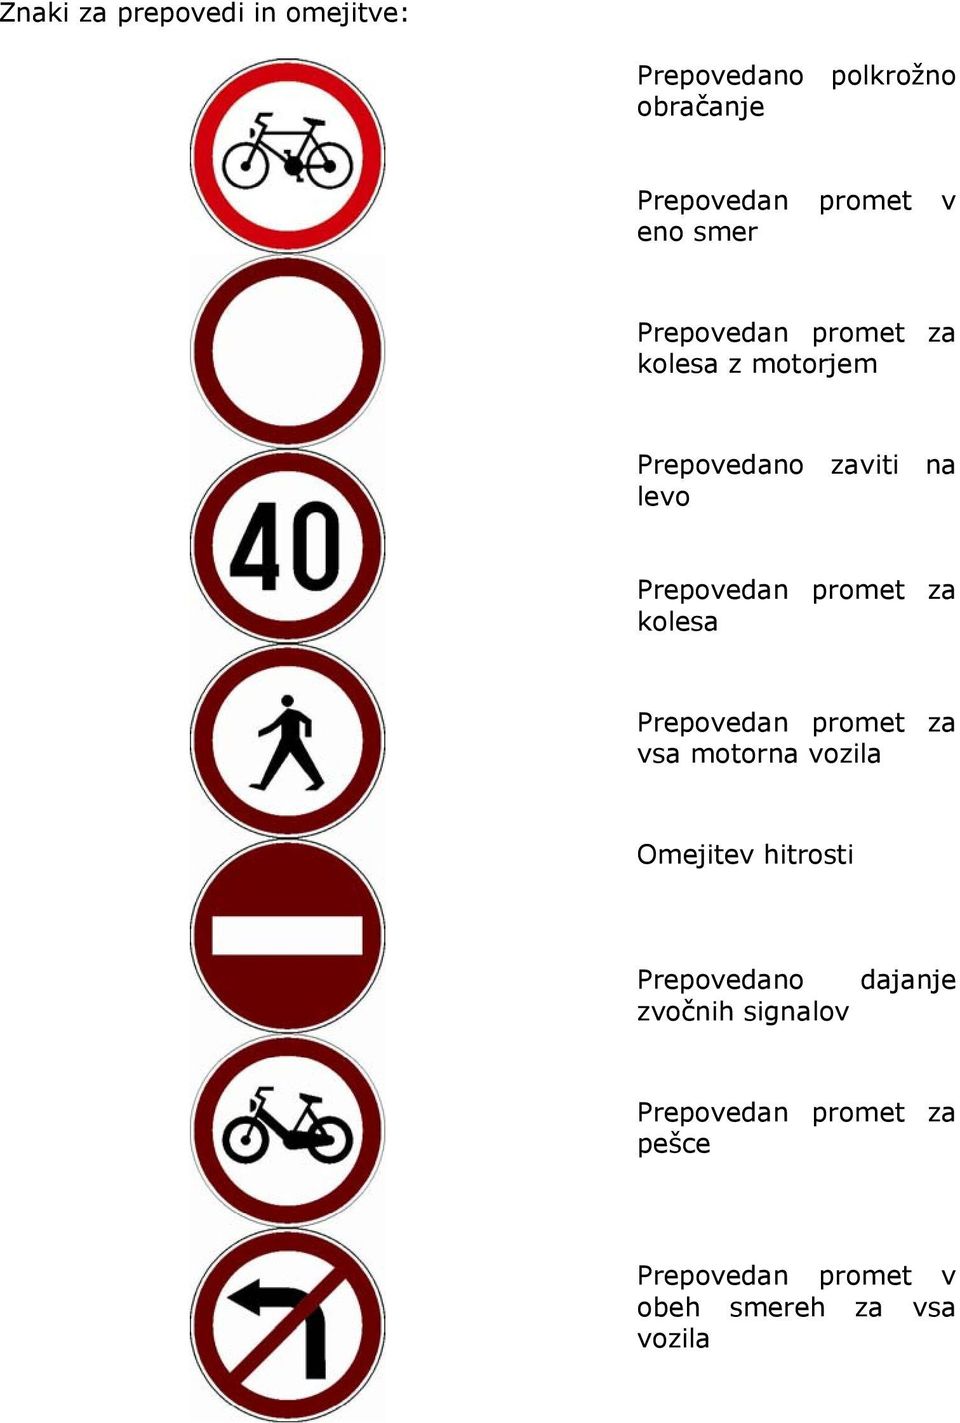 za kolesa Prepovedan promet za vsa motorna vozila Omejitev hitrosti Prepovedano dajanje